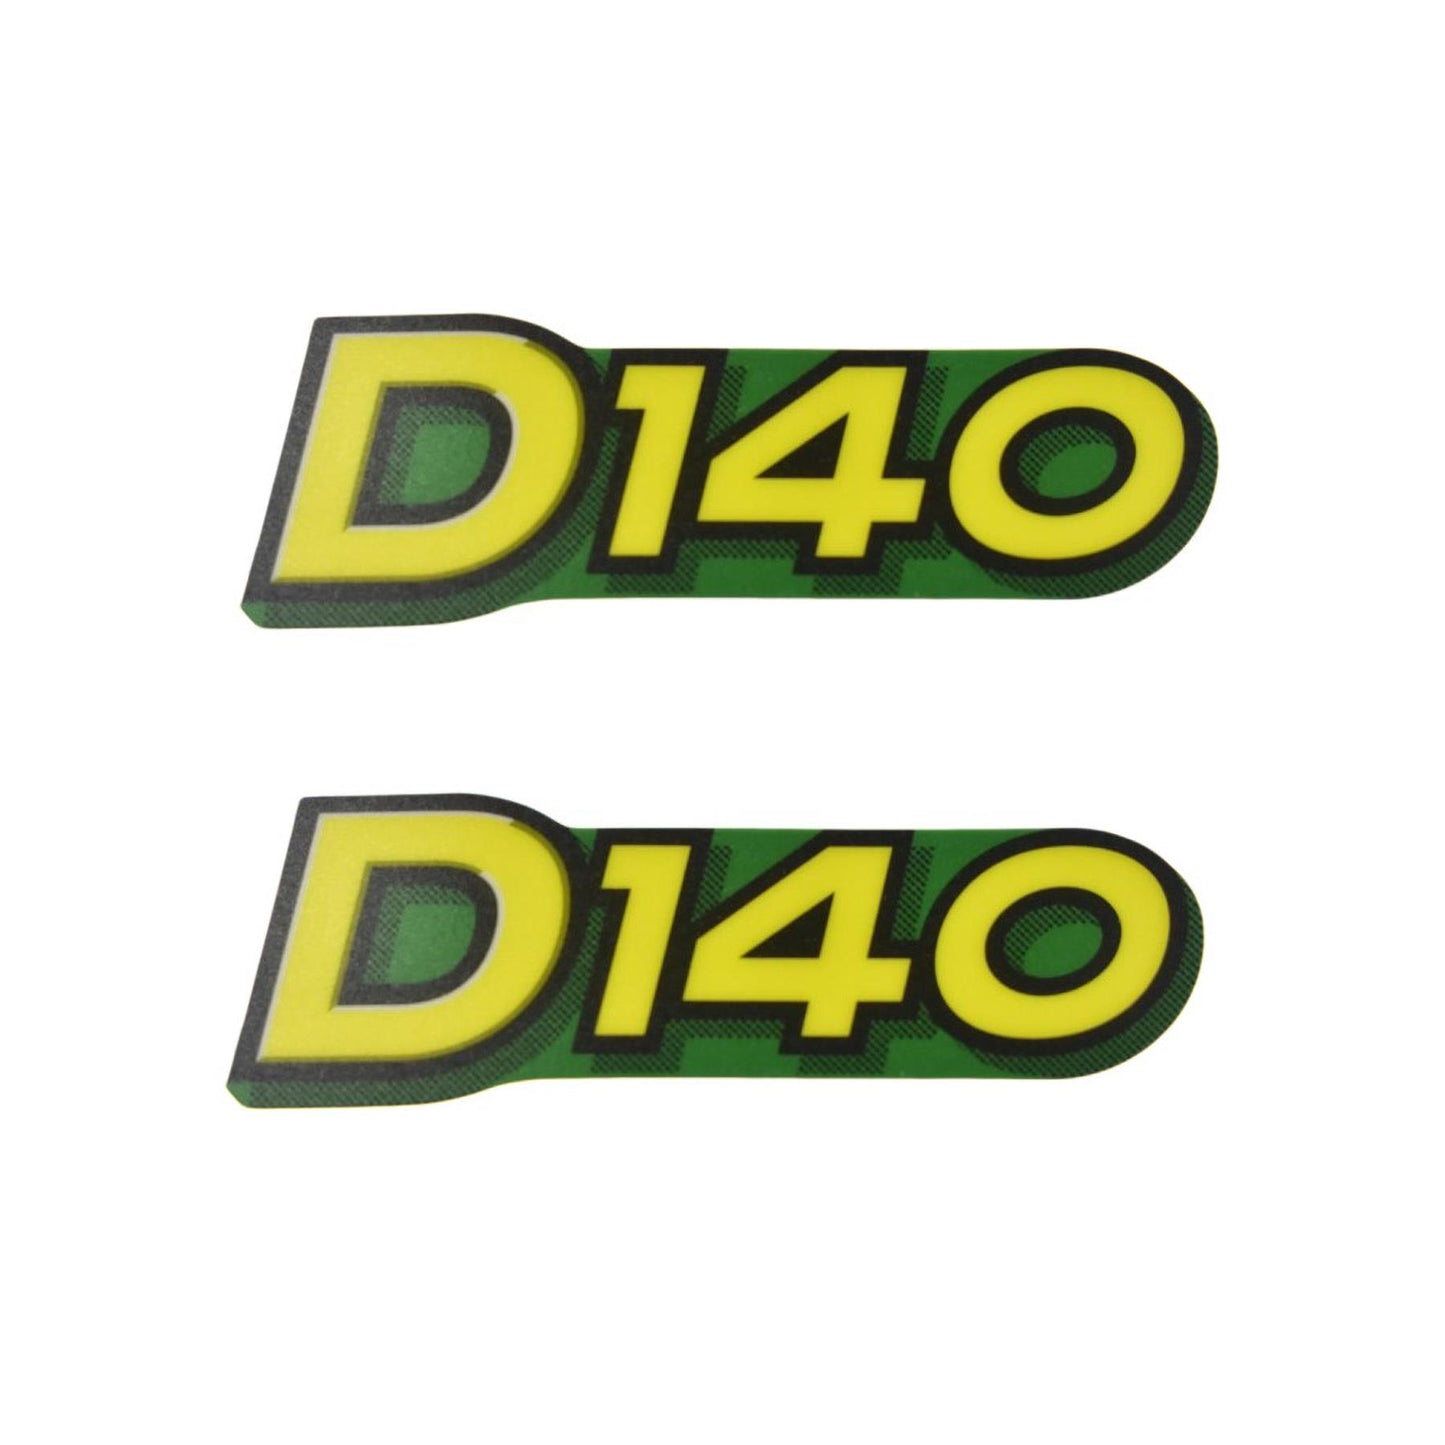 John Deere Decal - D140 - Set of 2 - GX23639